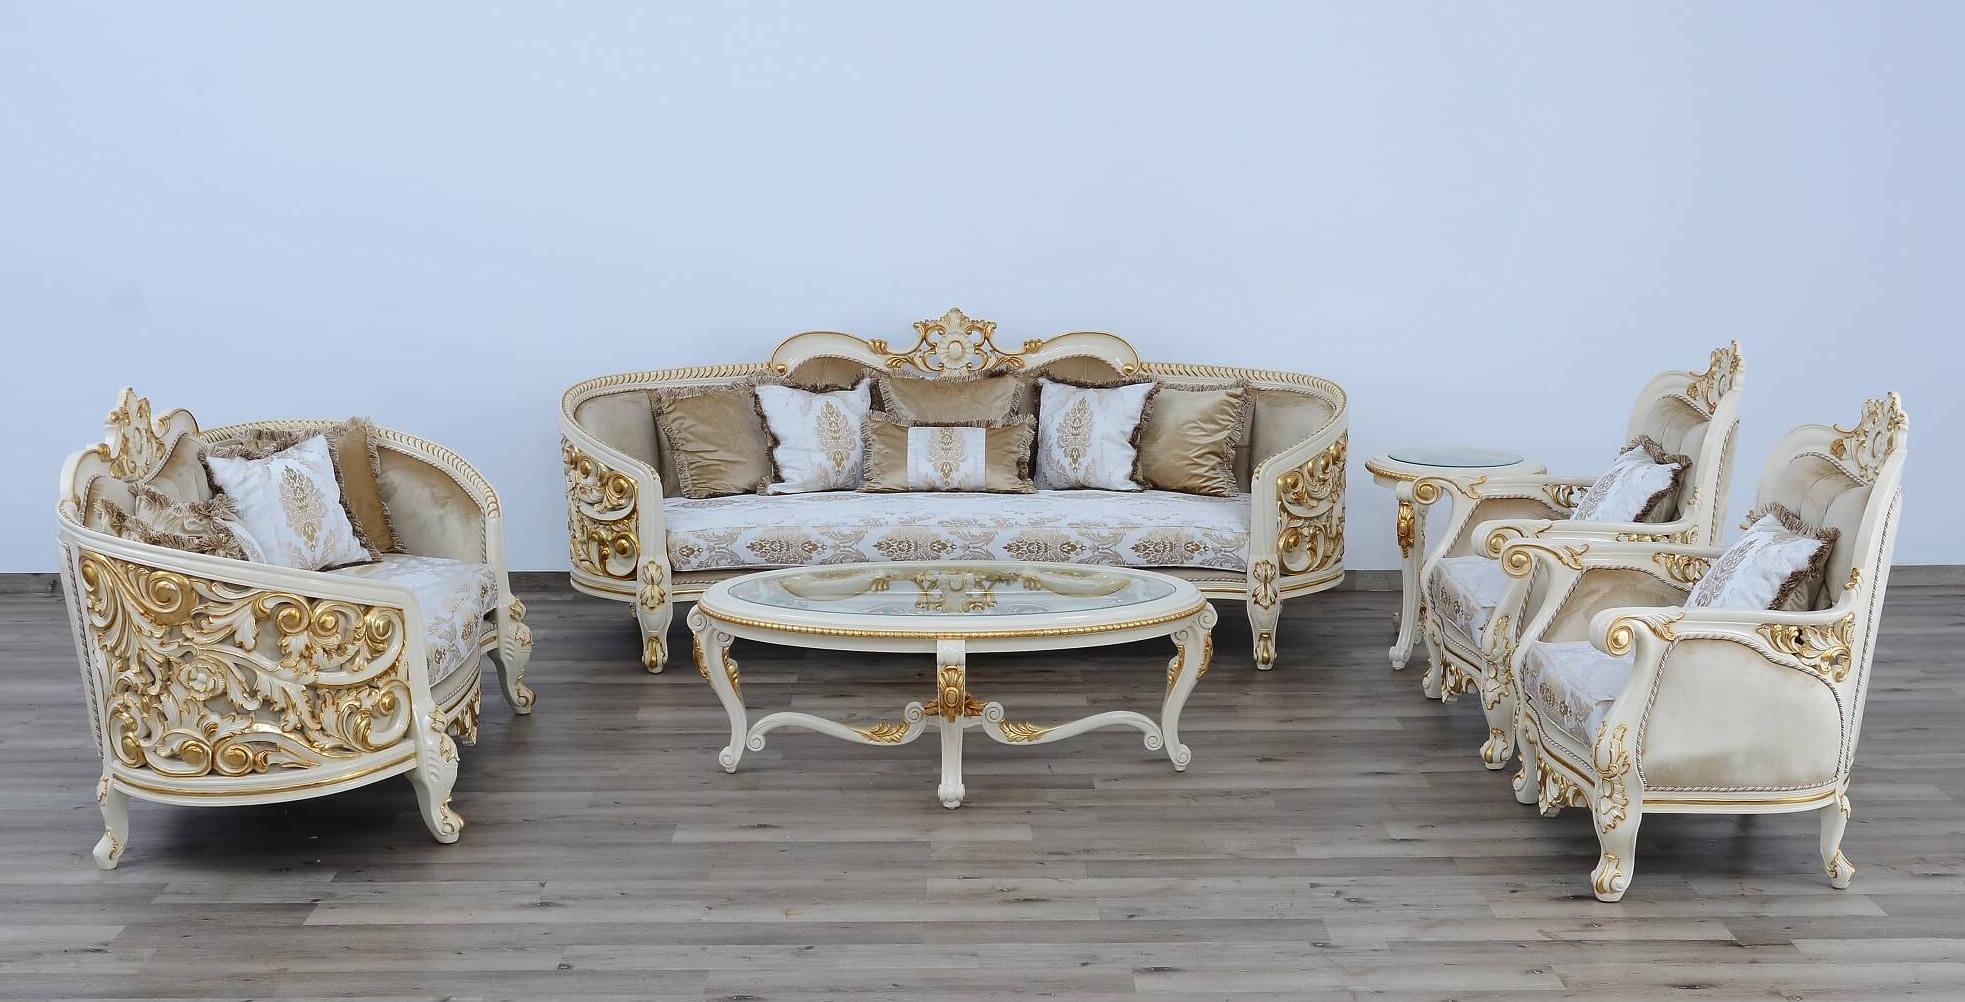 

        
663701290493Antique Beige & Gold Luxury BELLAGIO Round End Table EUROPEAN FURNITURE
